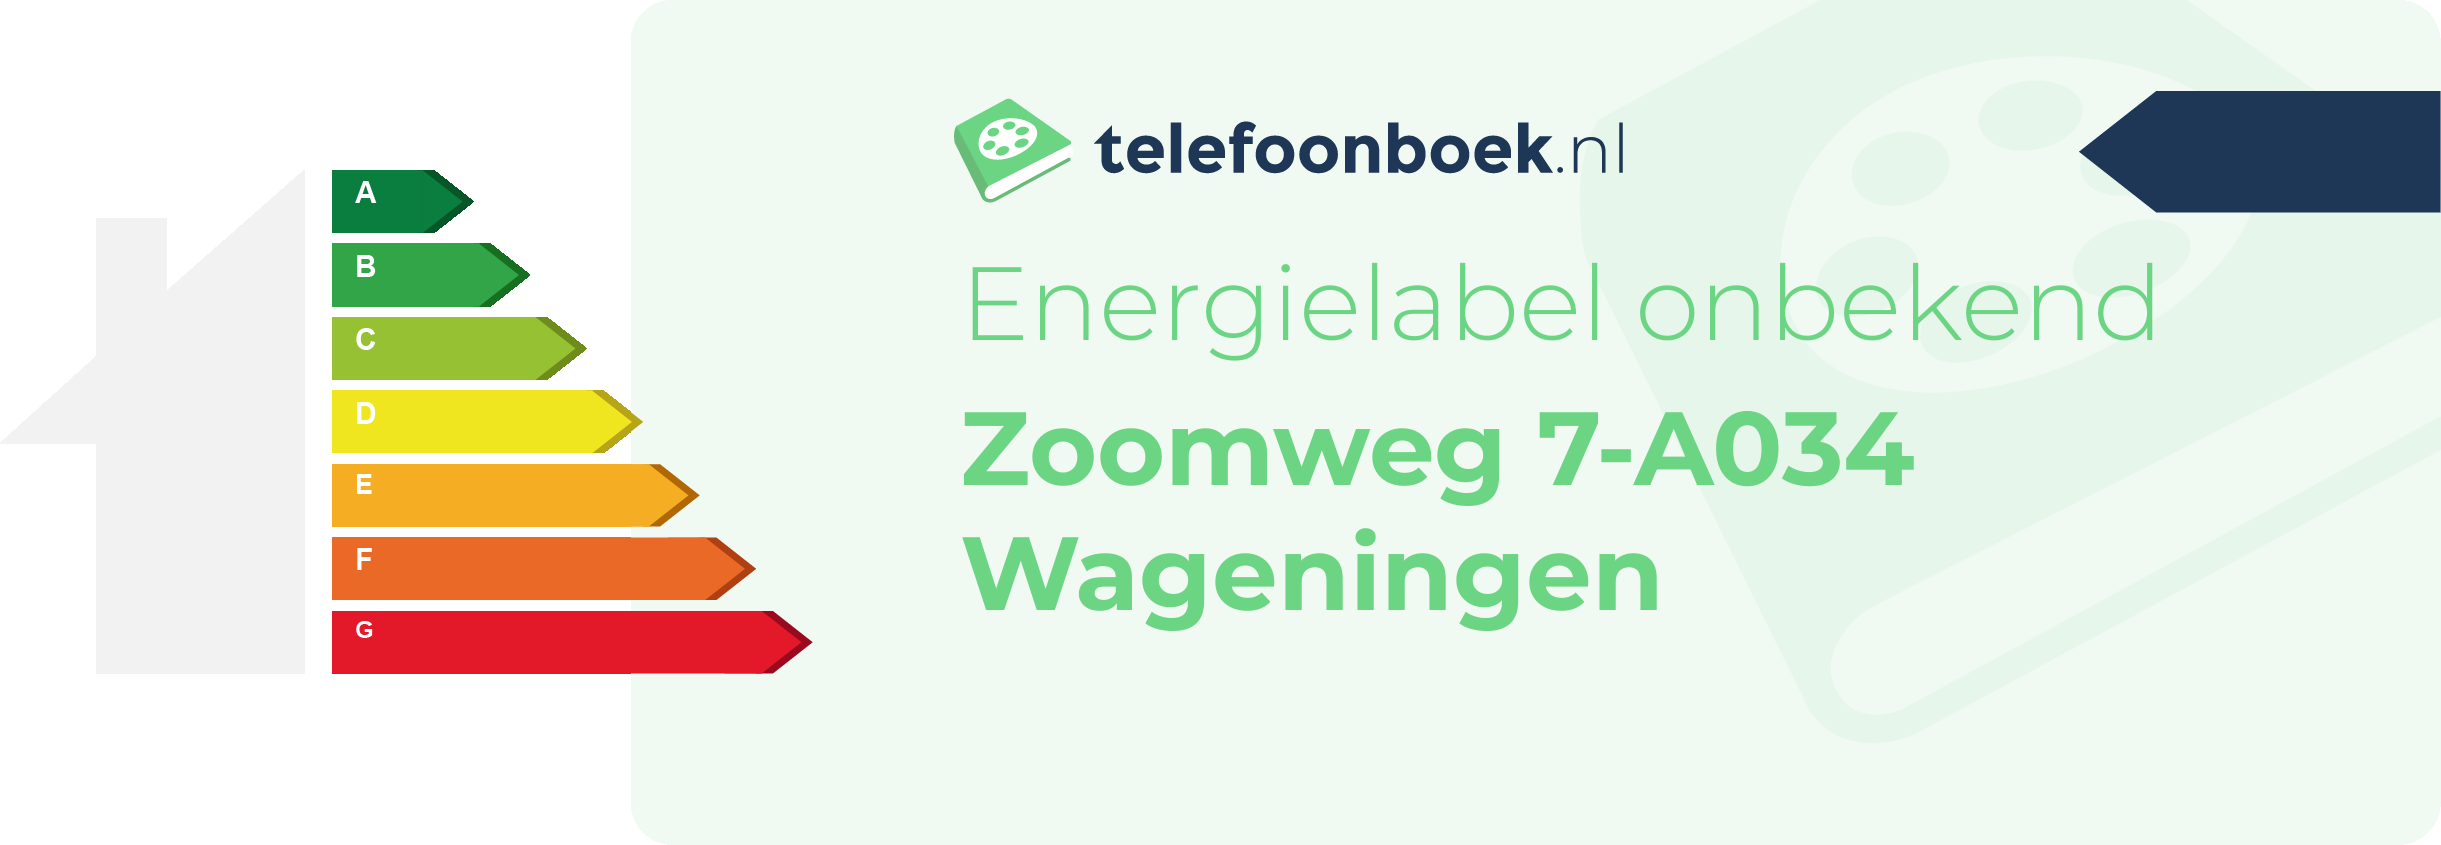 Energielabel Zoomweg 7-A034 Wageningen